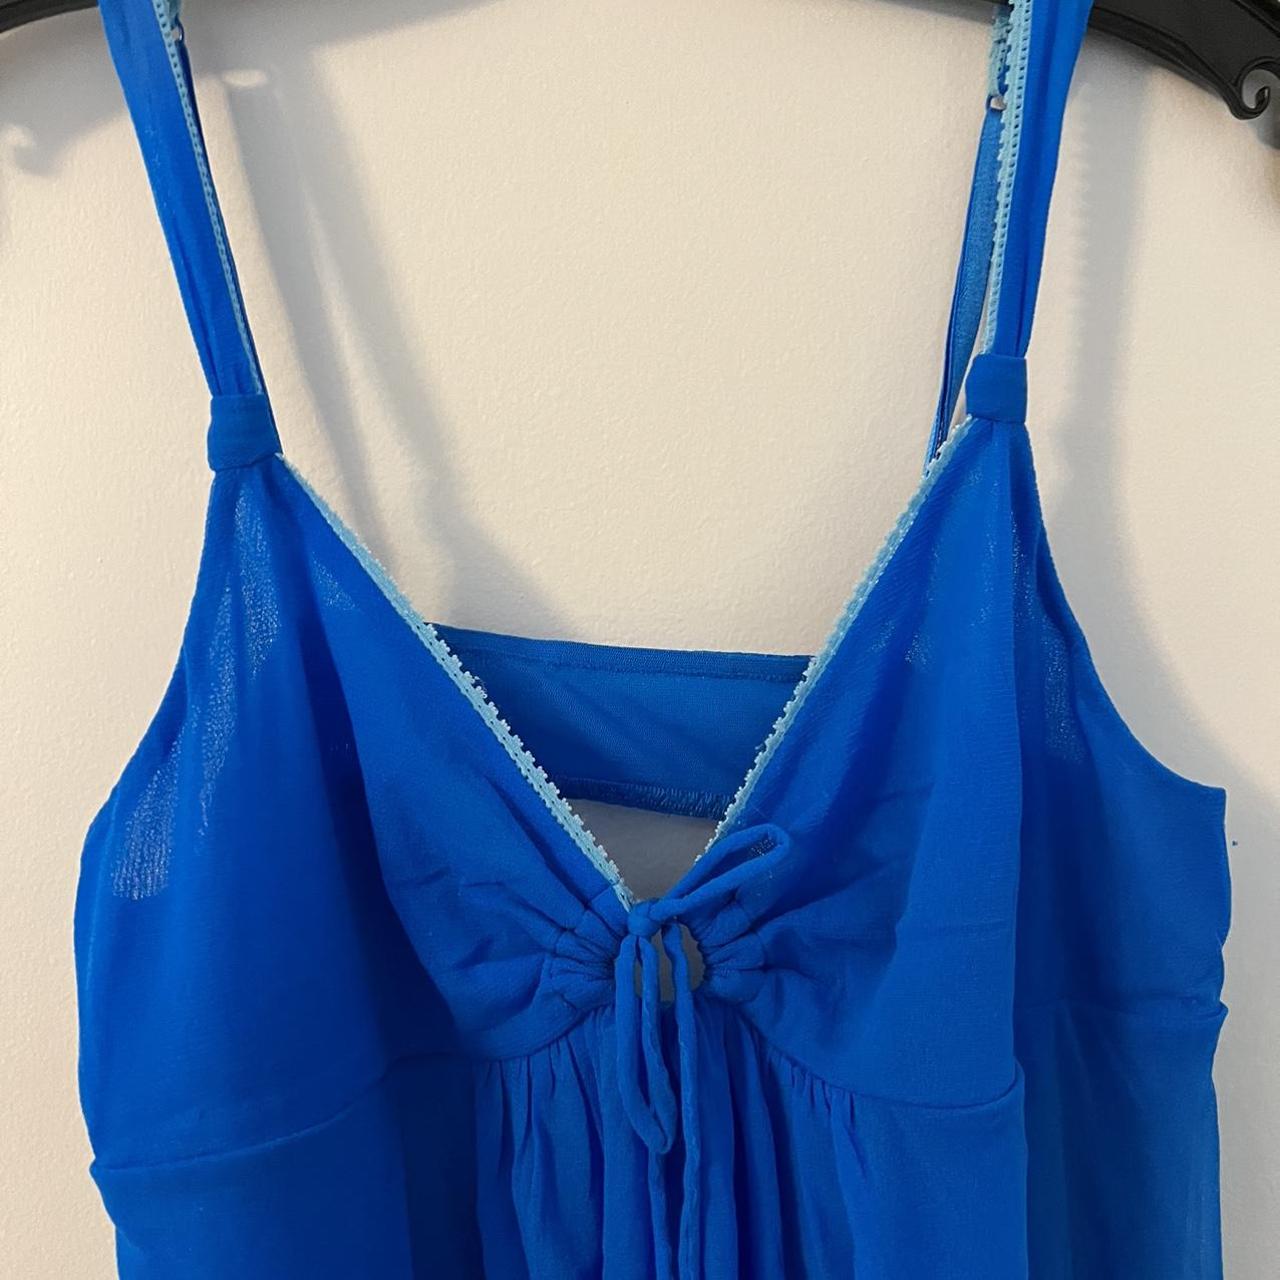 On Gossamer Women's Blue Nightwear | Depop